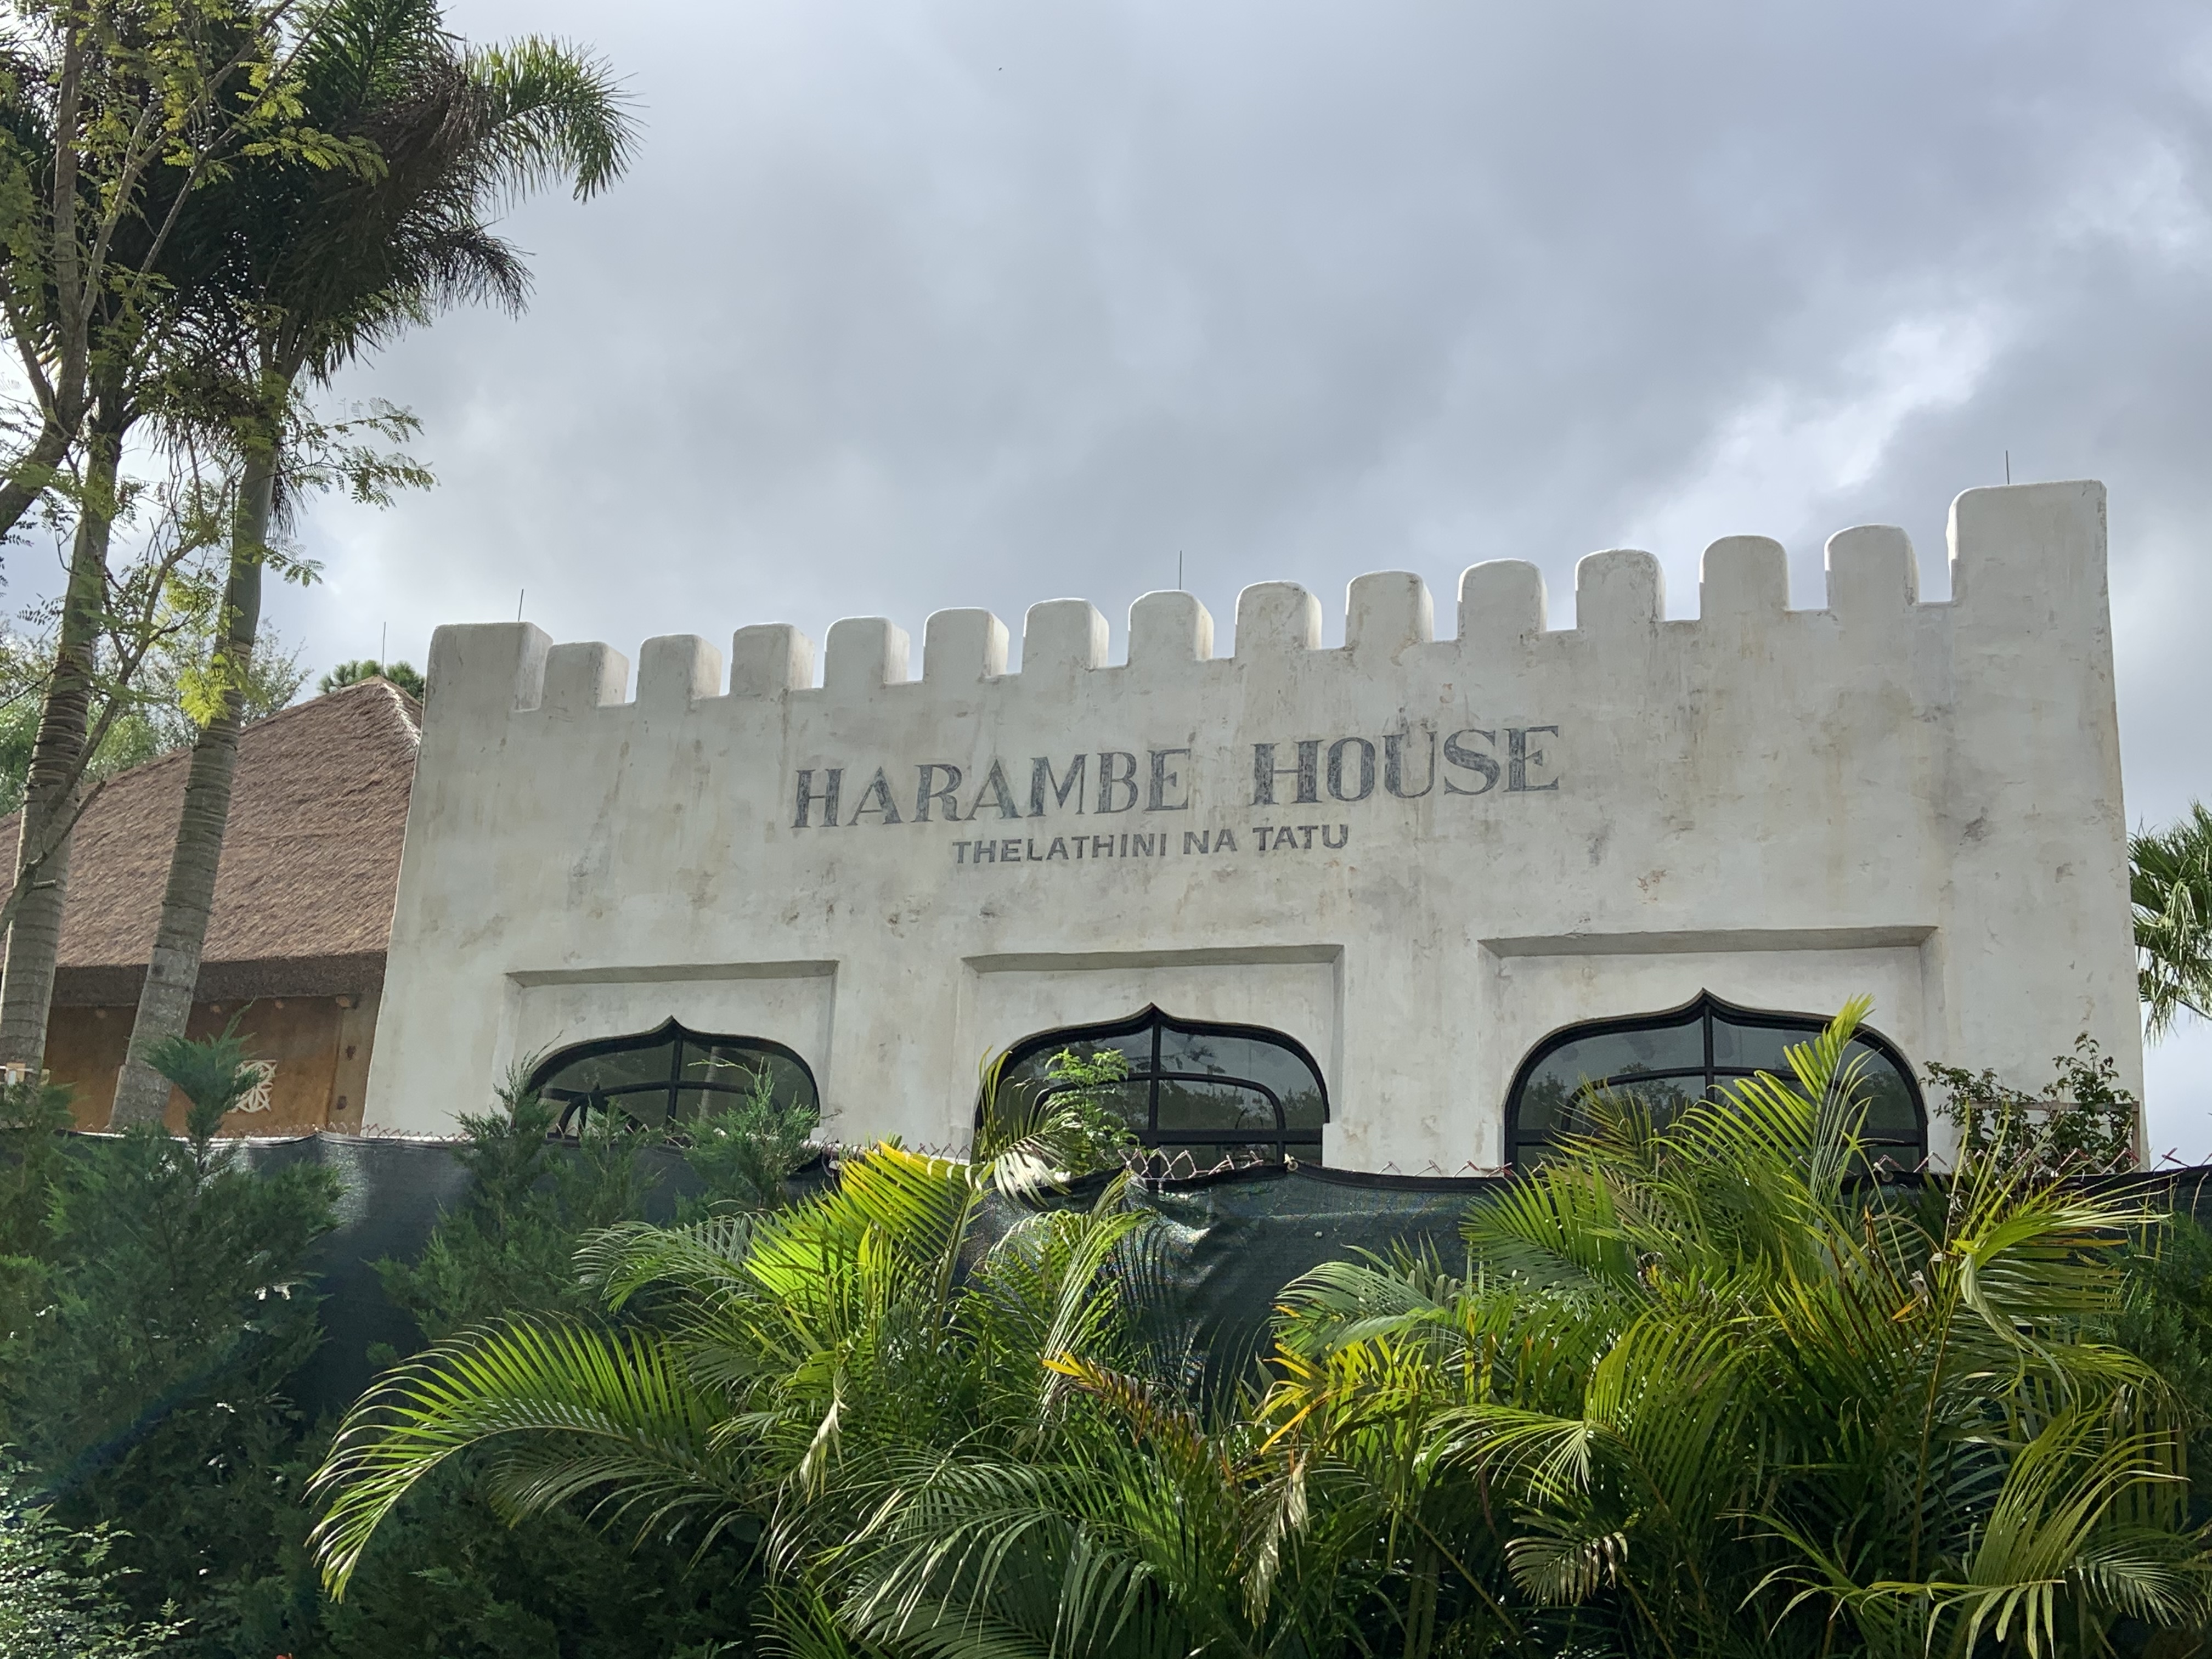 Harambe House 12/17/19 1